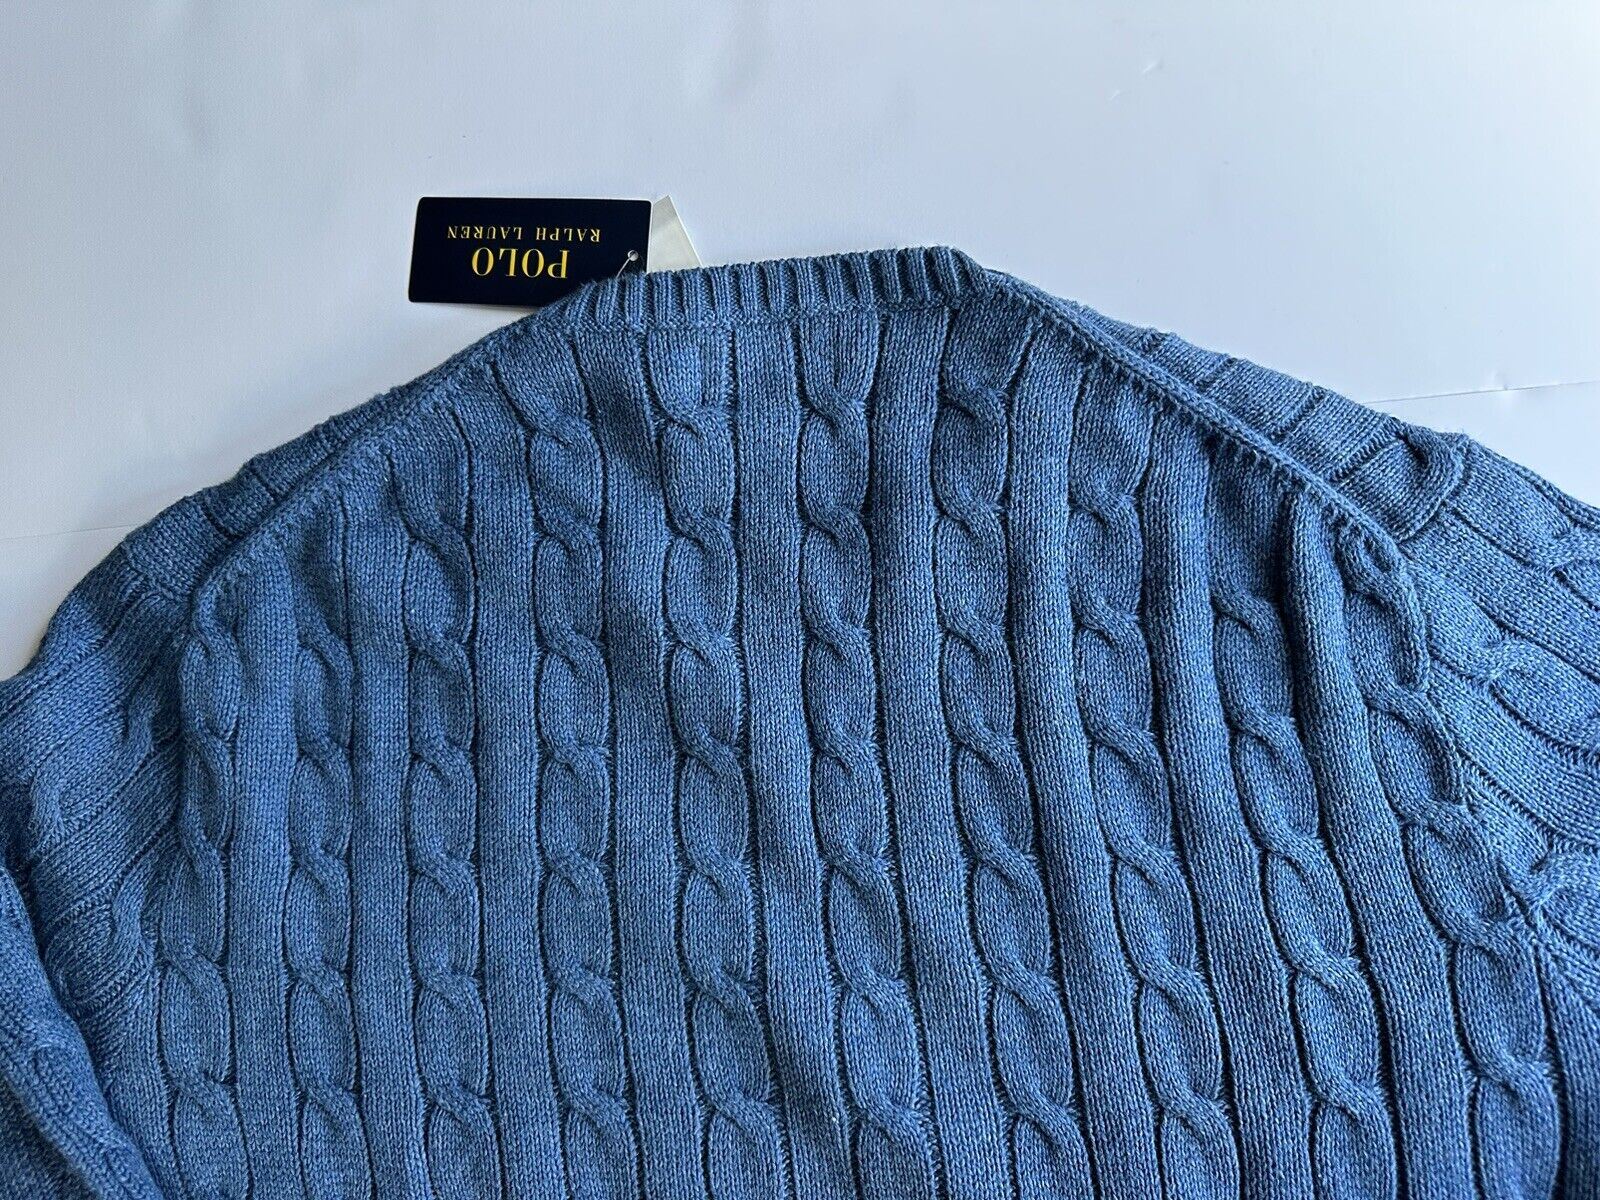 Мужской вязаный свитер синего цвета Polo Ralph Lauren, размер 2XL/2TG, NWT 138 долларов США 